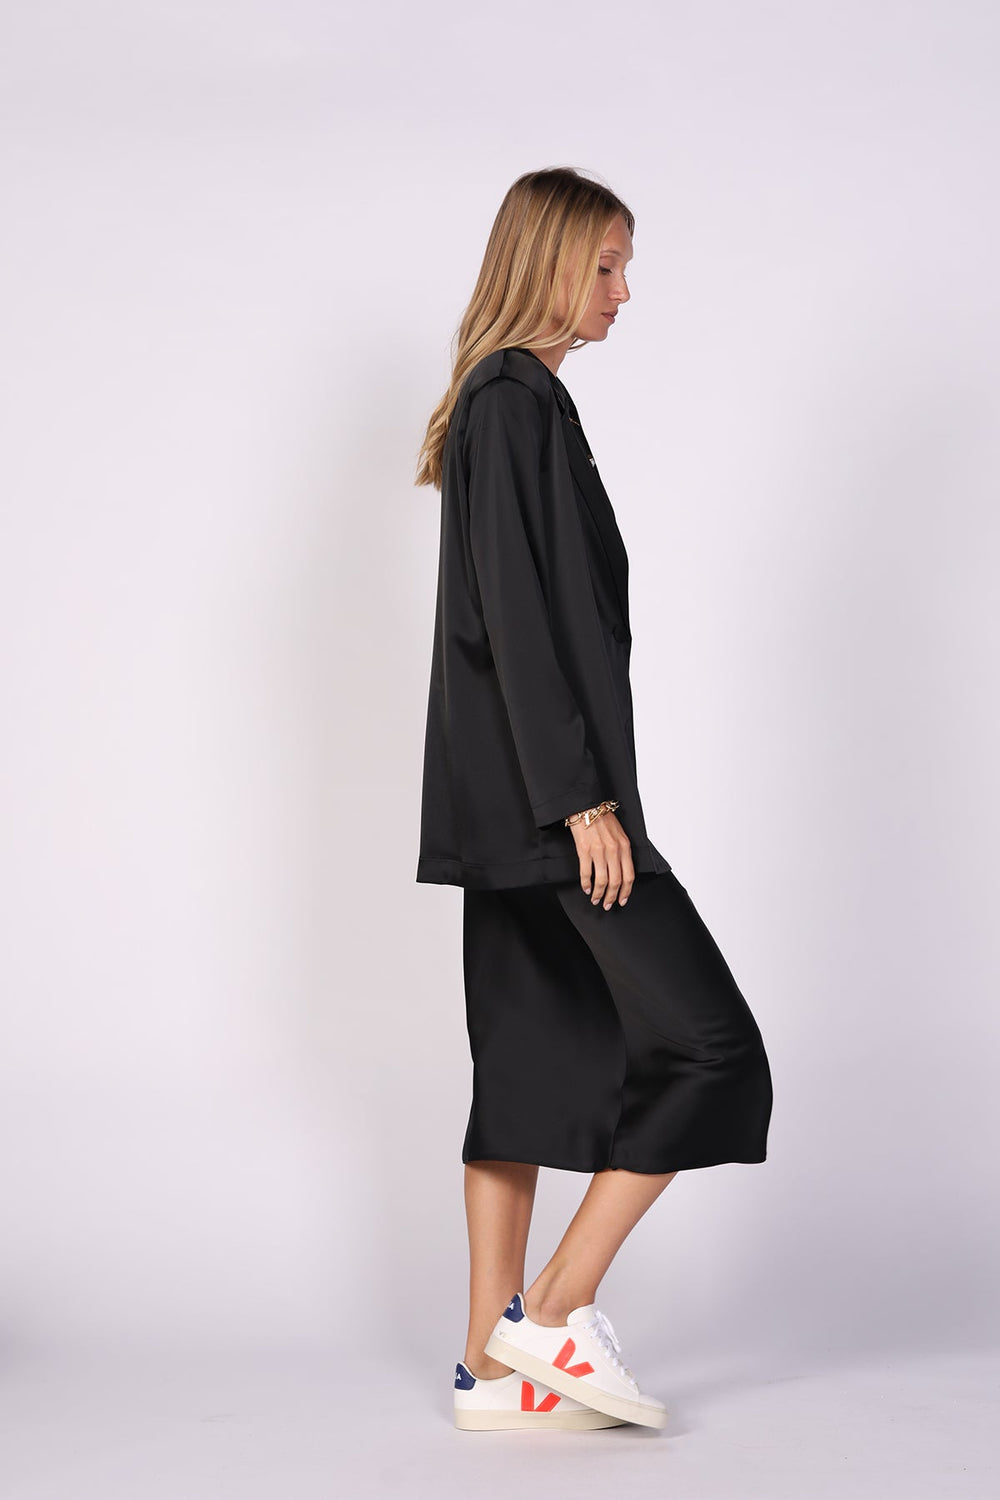 חצאית אלכס בצבע שחור - Dana Sidi